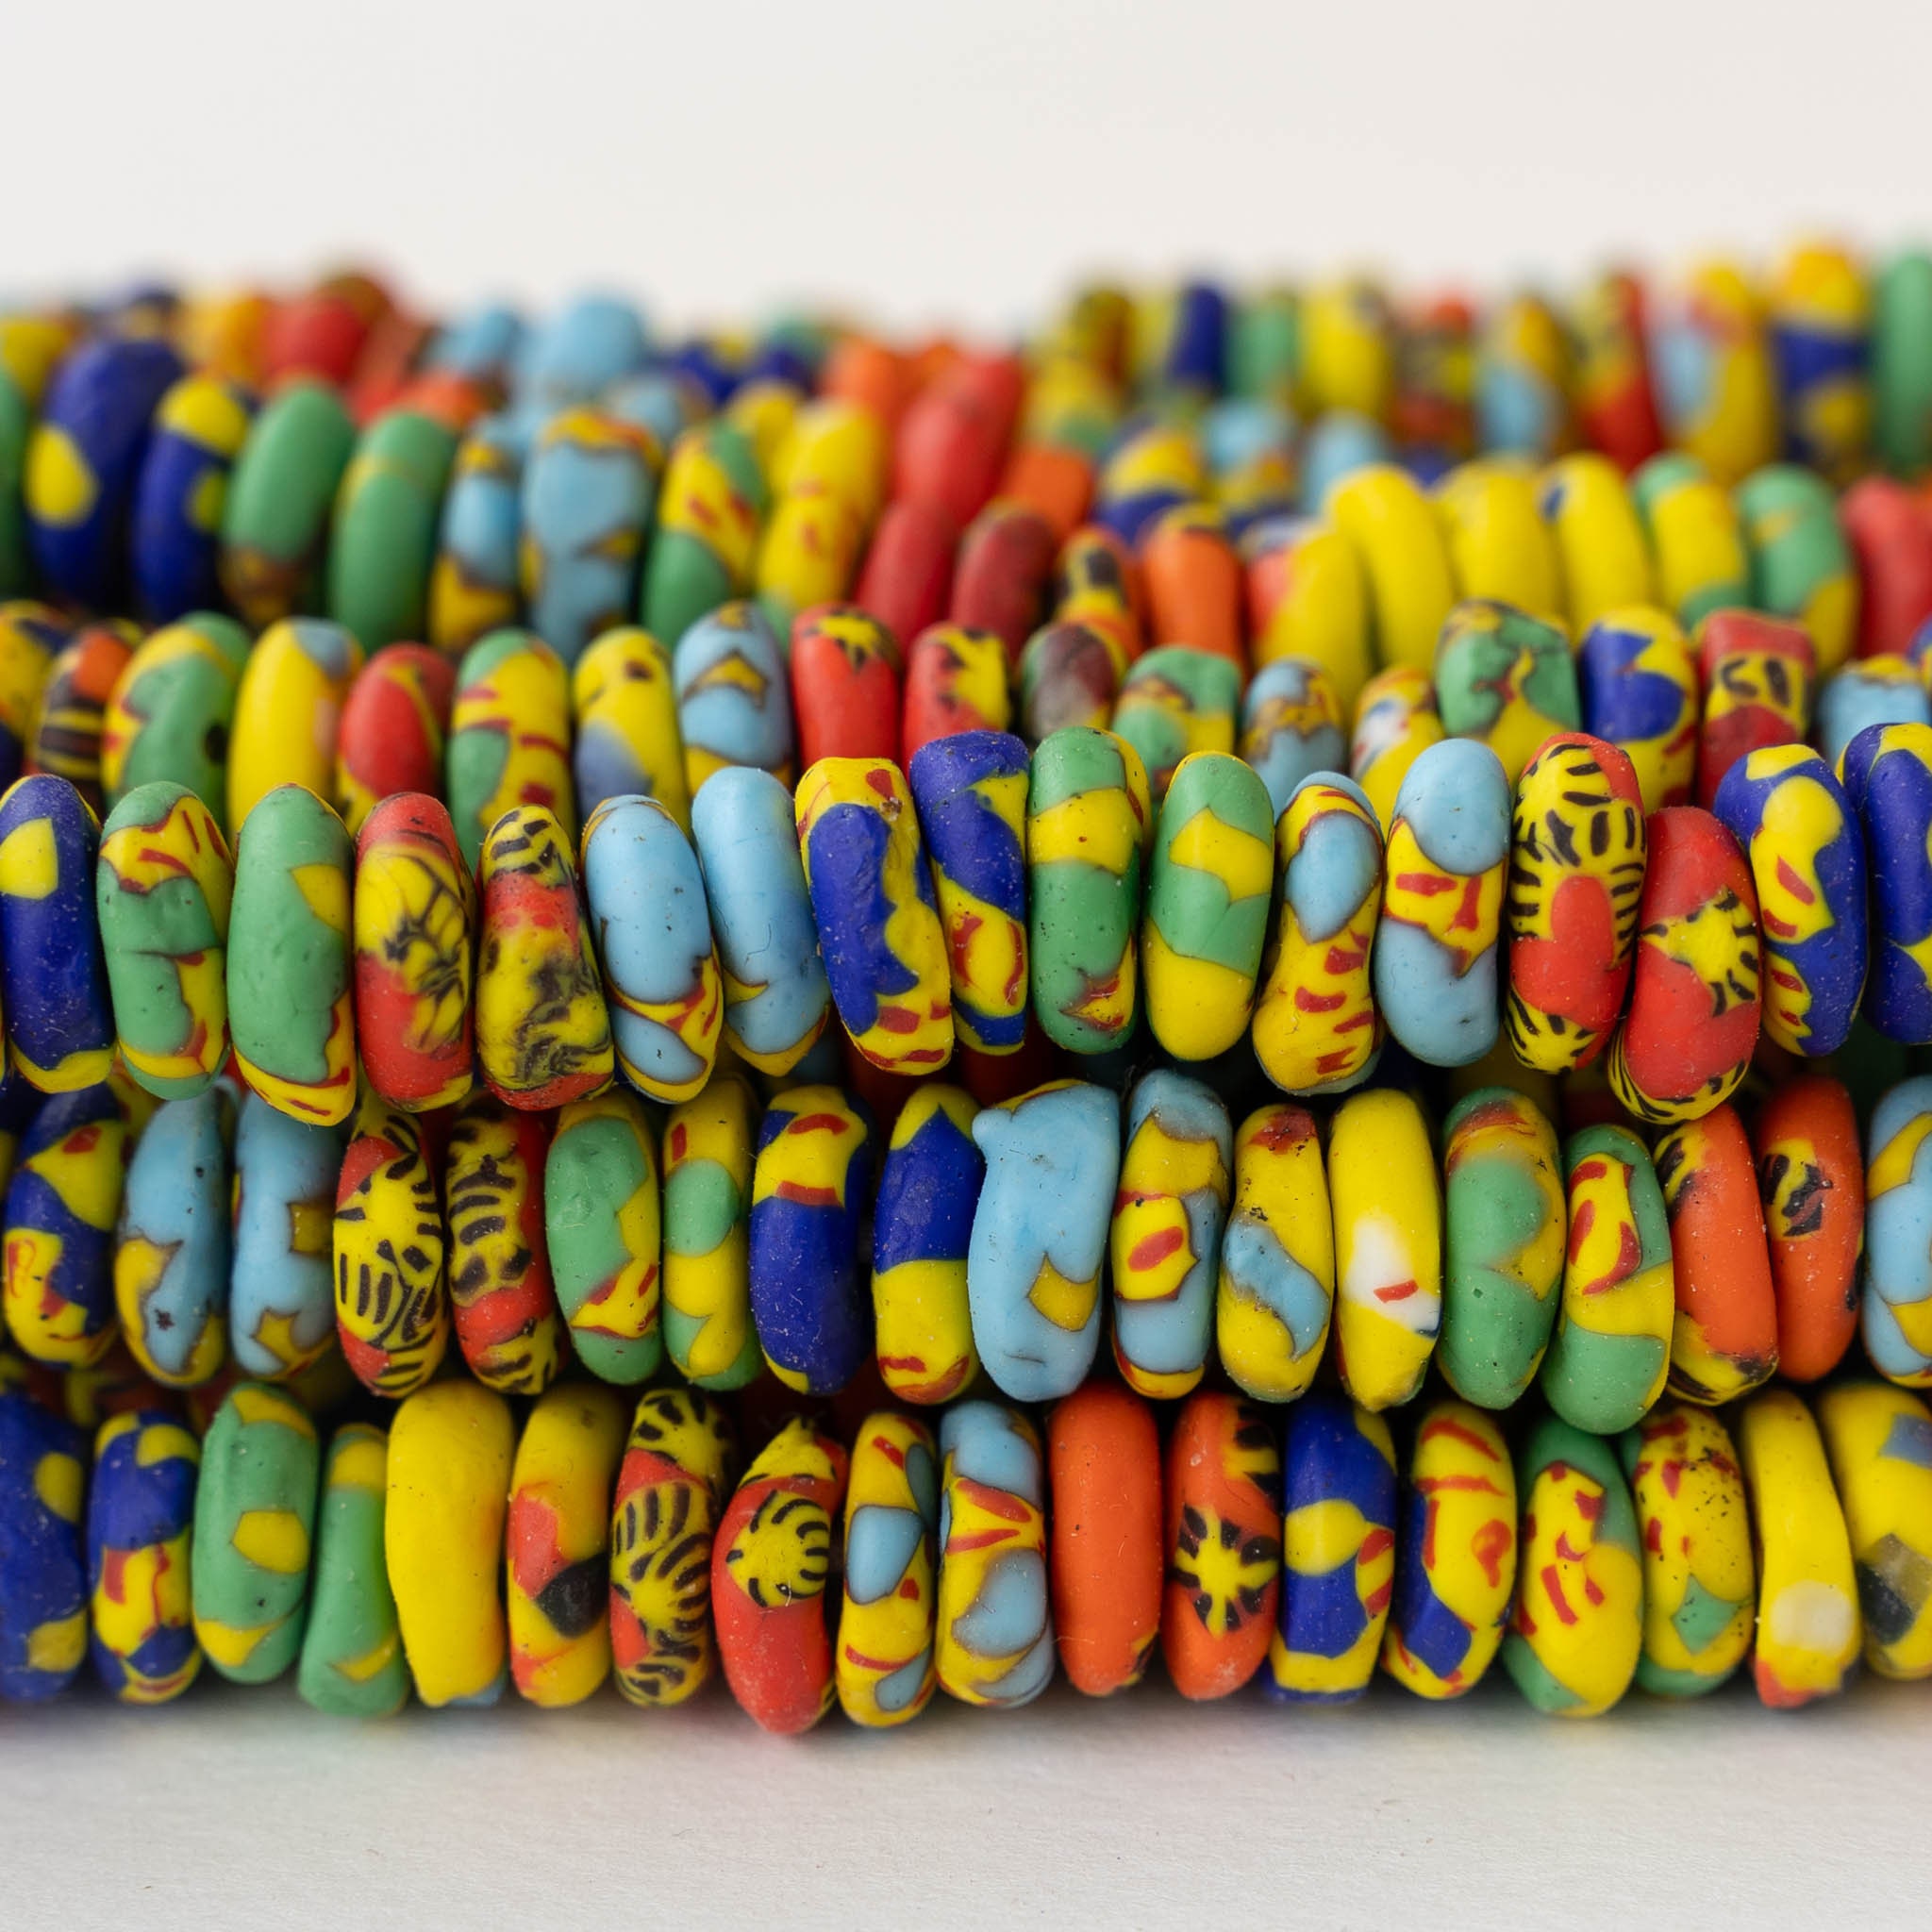 Cuentas Africanas de Vidrio Reciclado o Krobo Beads - Copenta